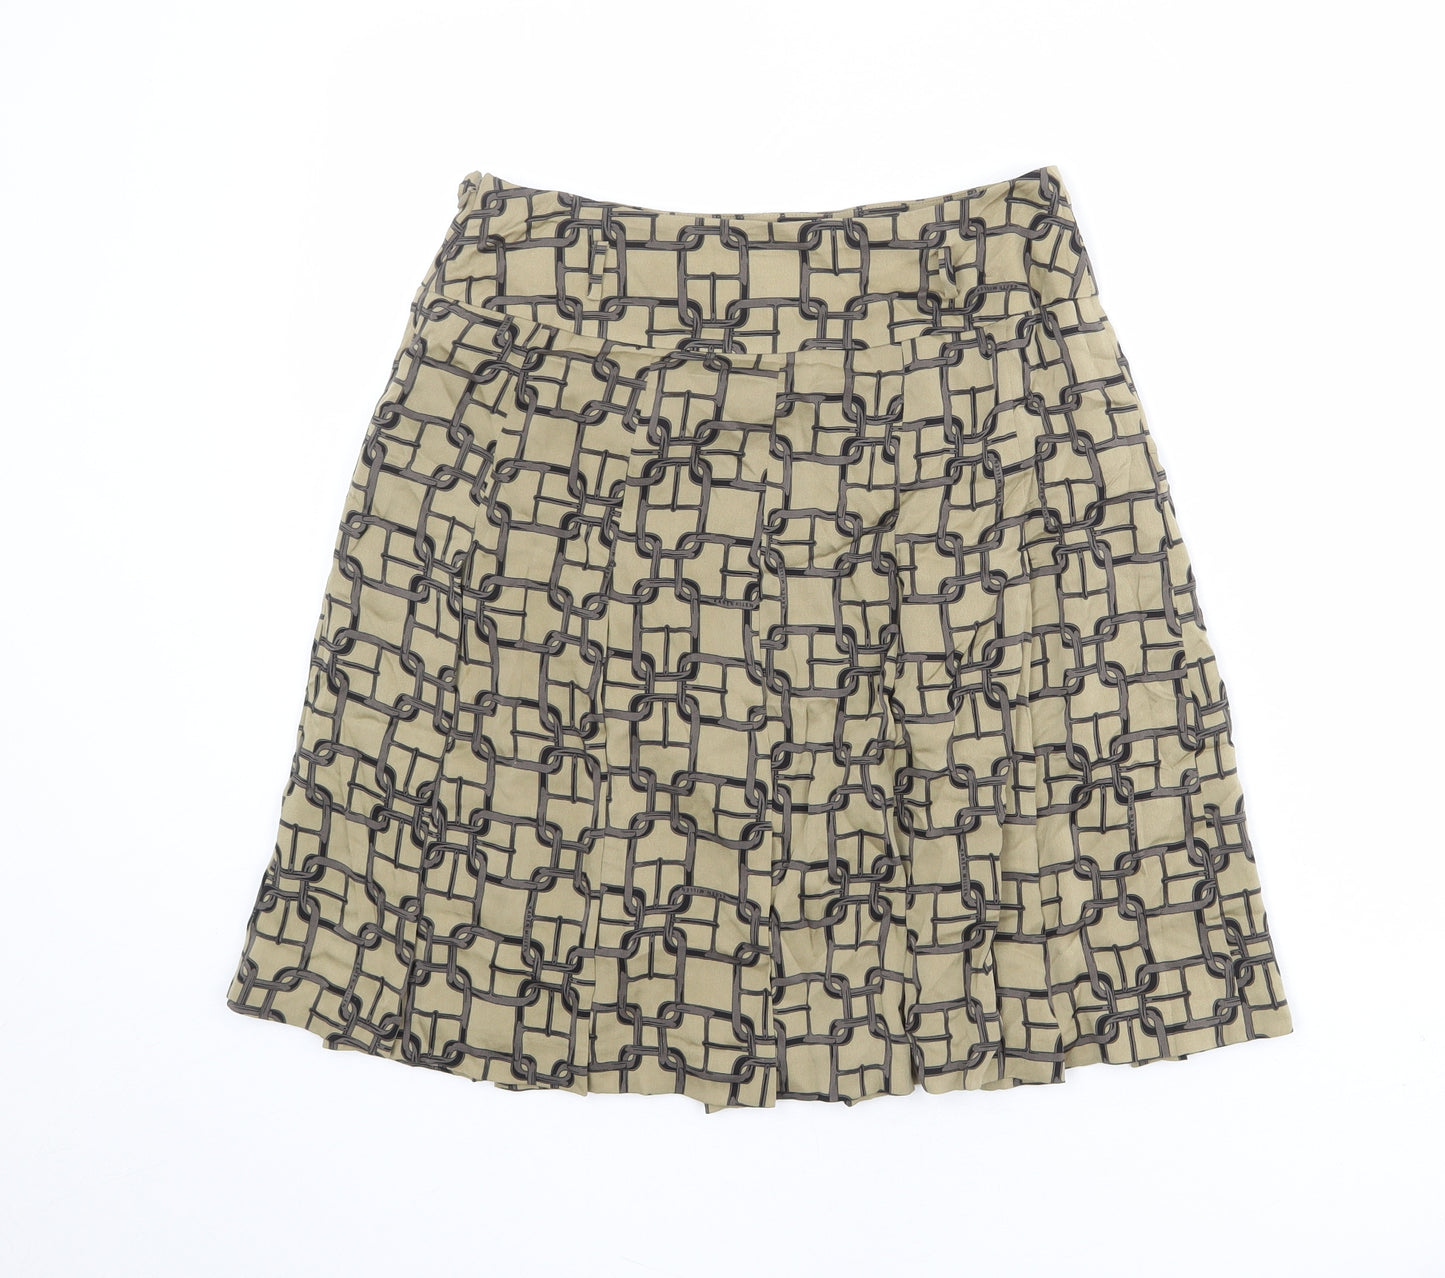 Karen Millen Womens Green Geometric Polyester A-Line Skirt Size 8 Zip